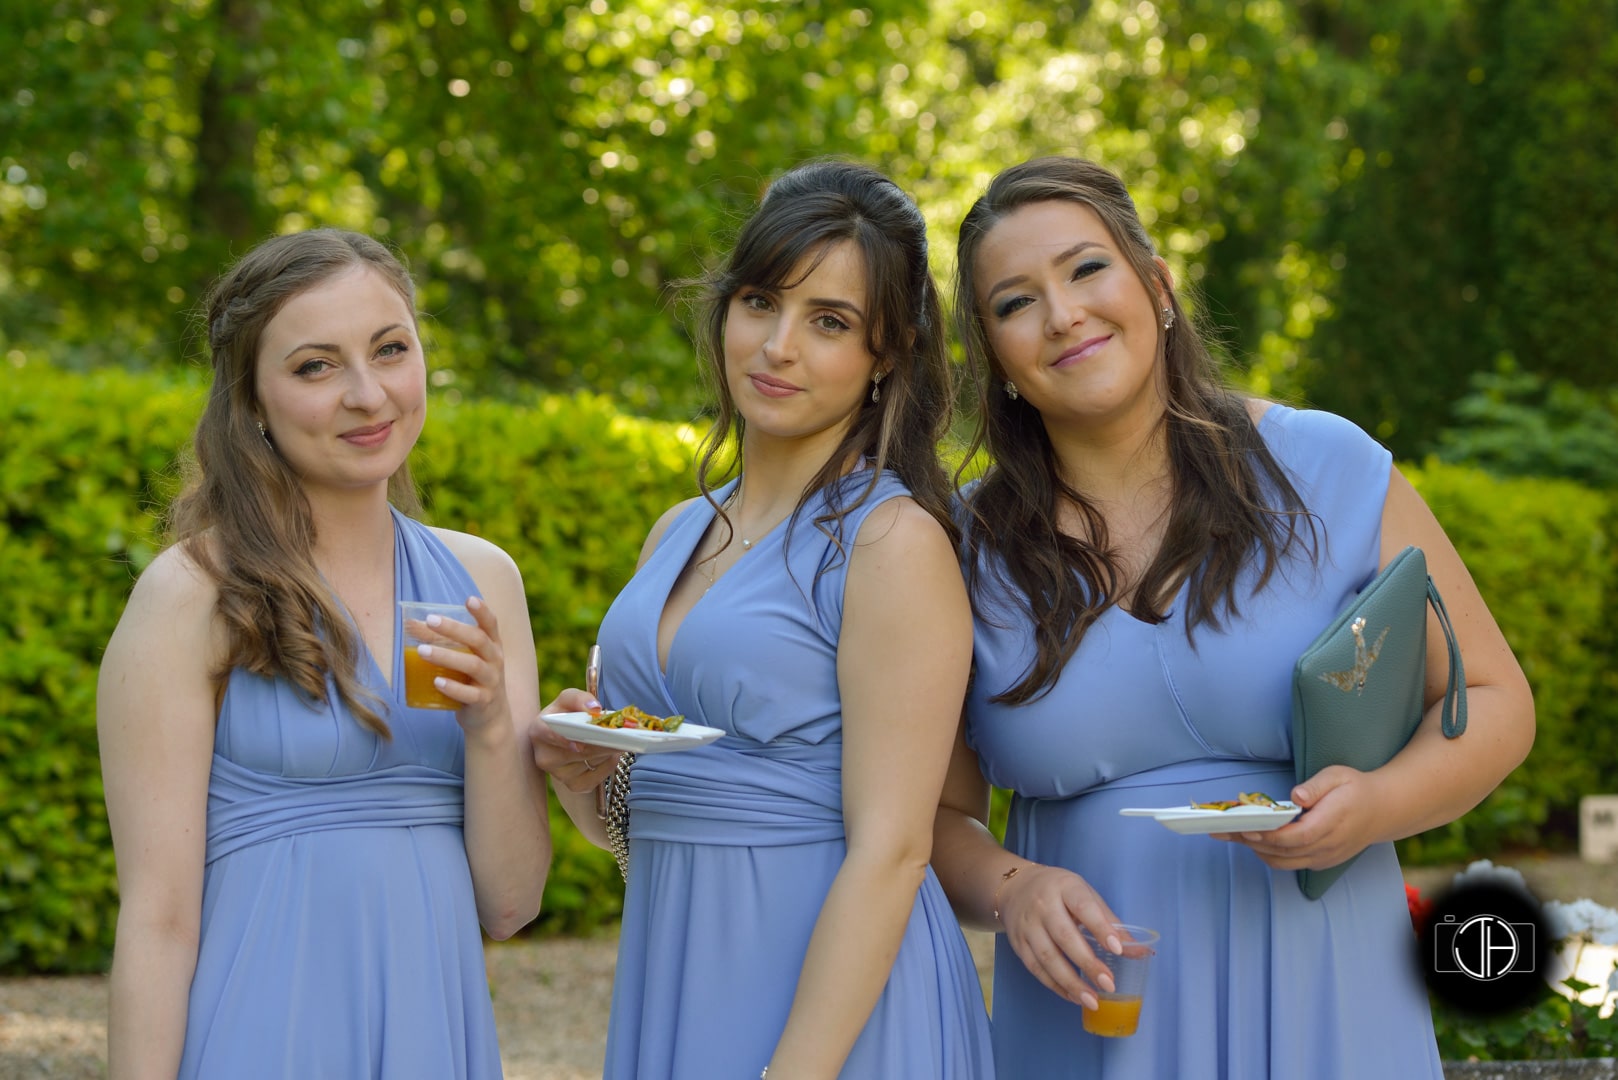 Photographe mariage Toulouse, Demoiselles d'honneur assorties, robes bleues